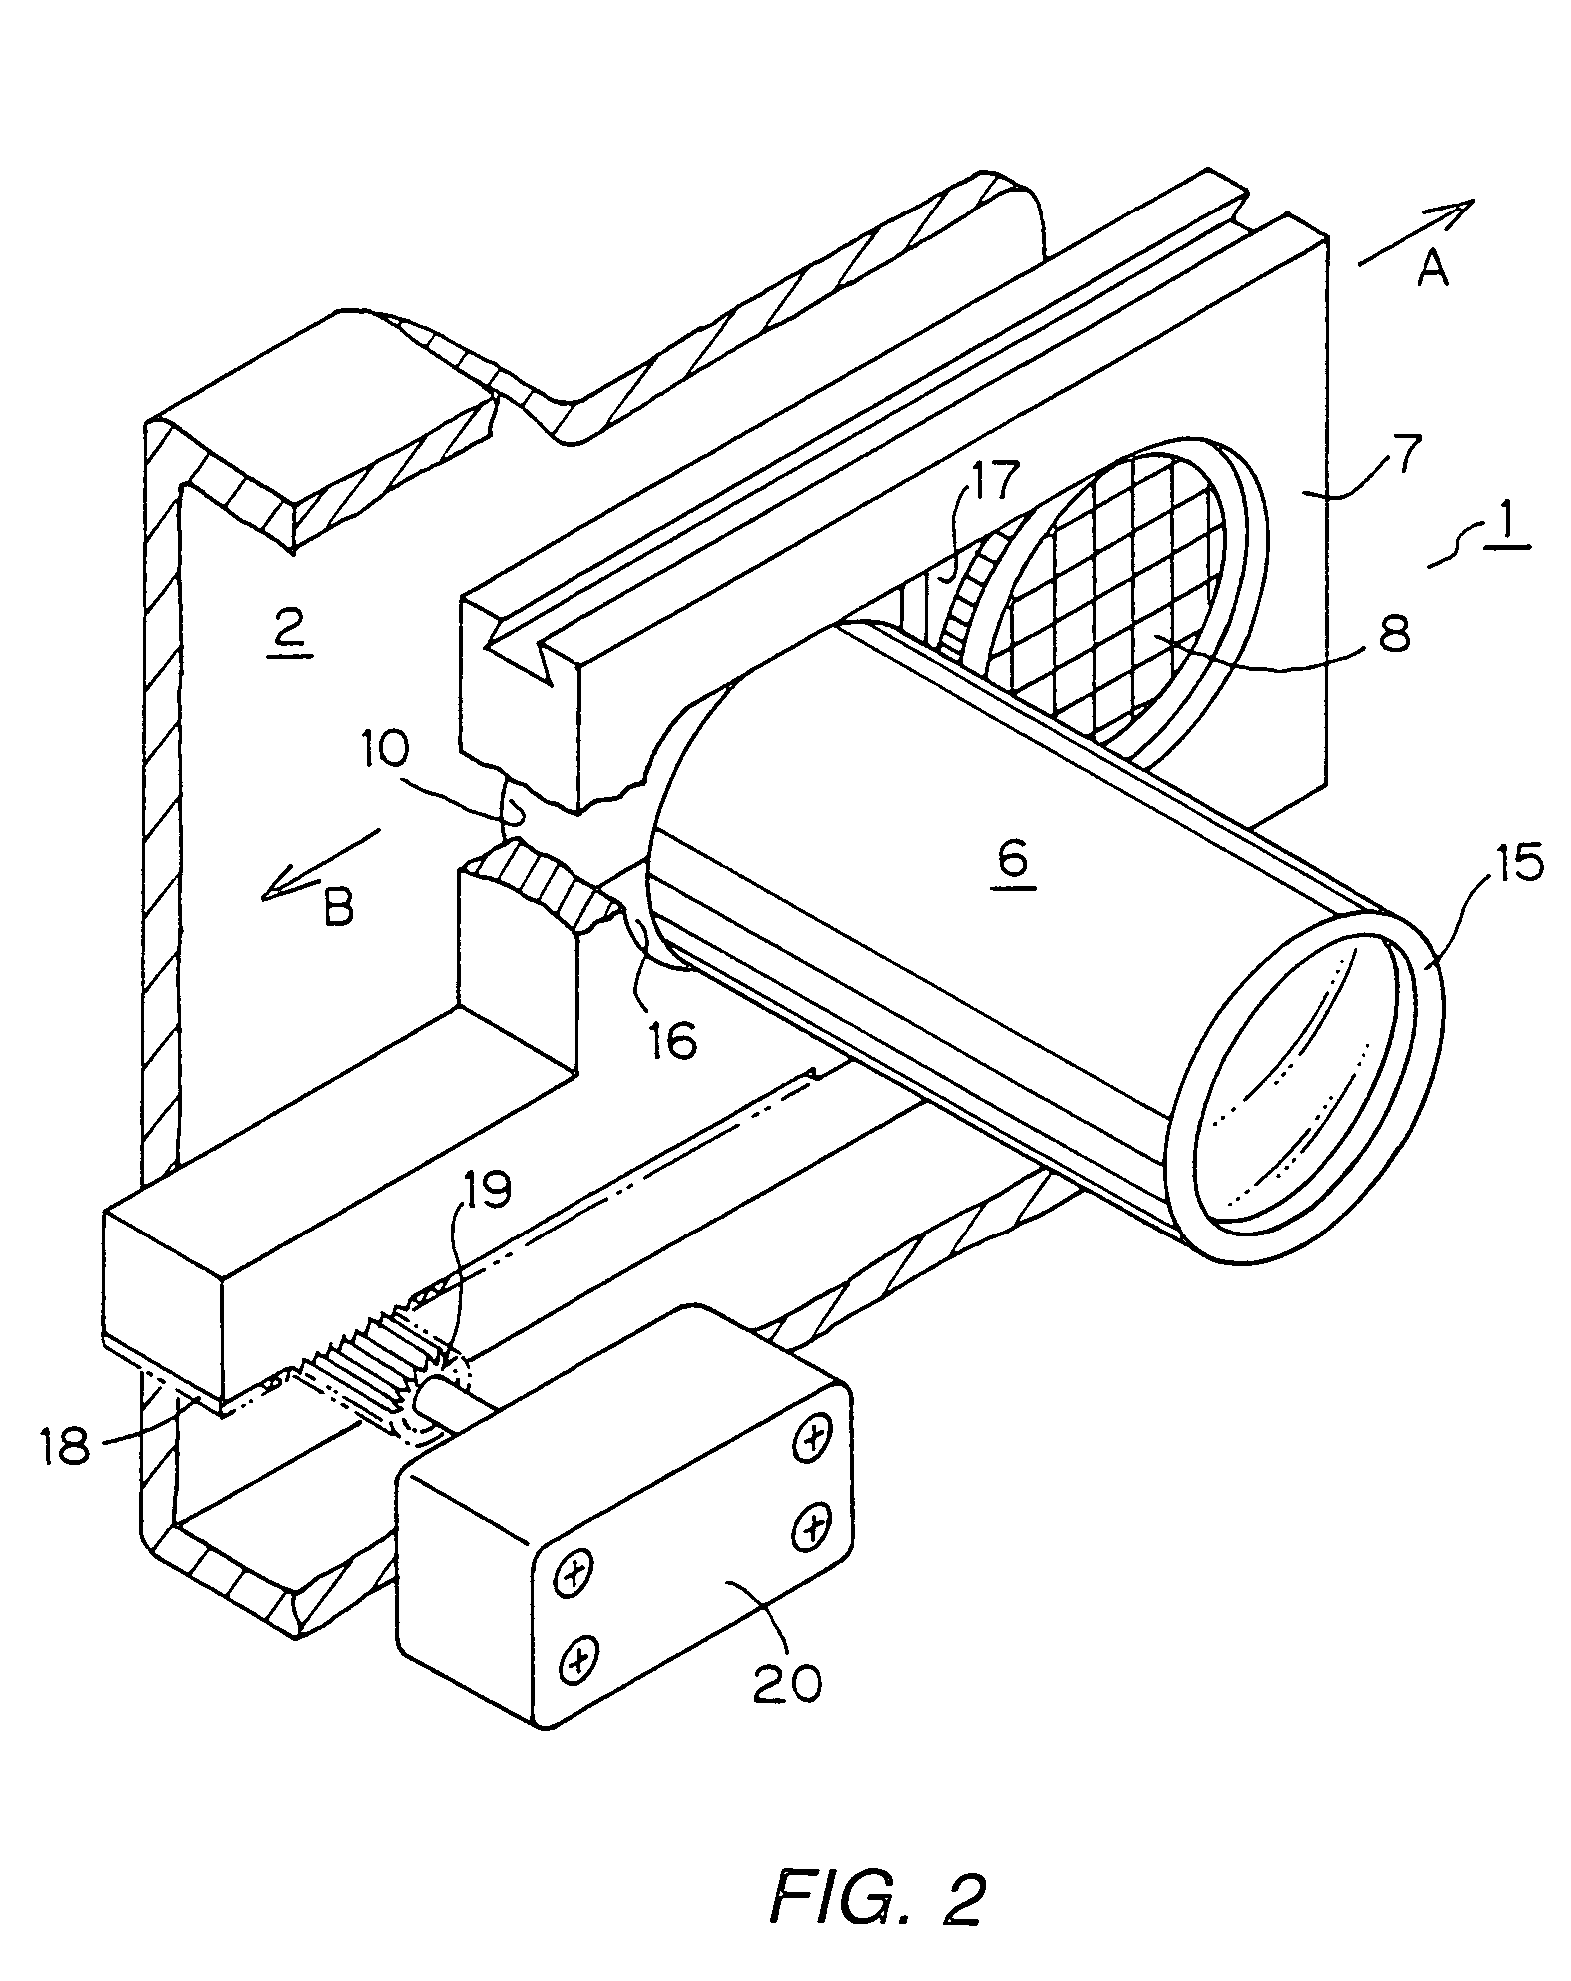 Projector apparatus